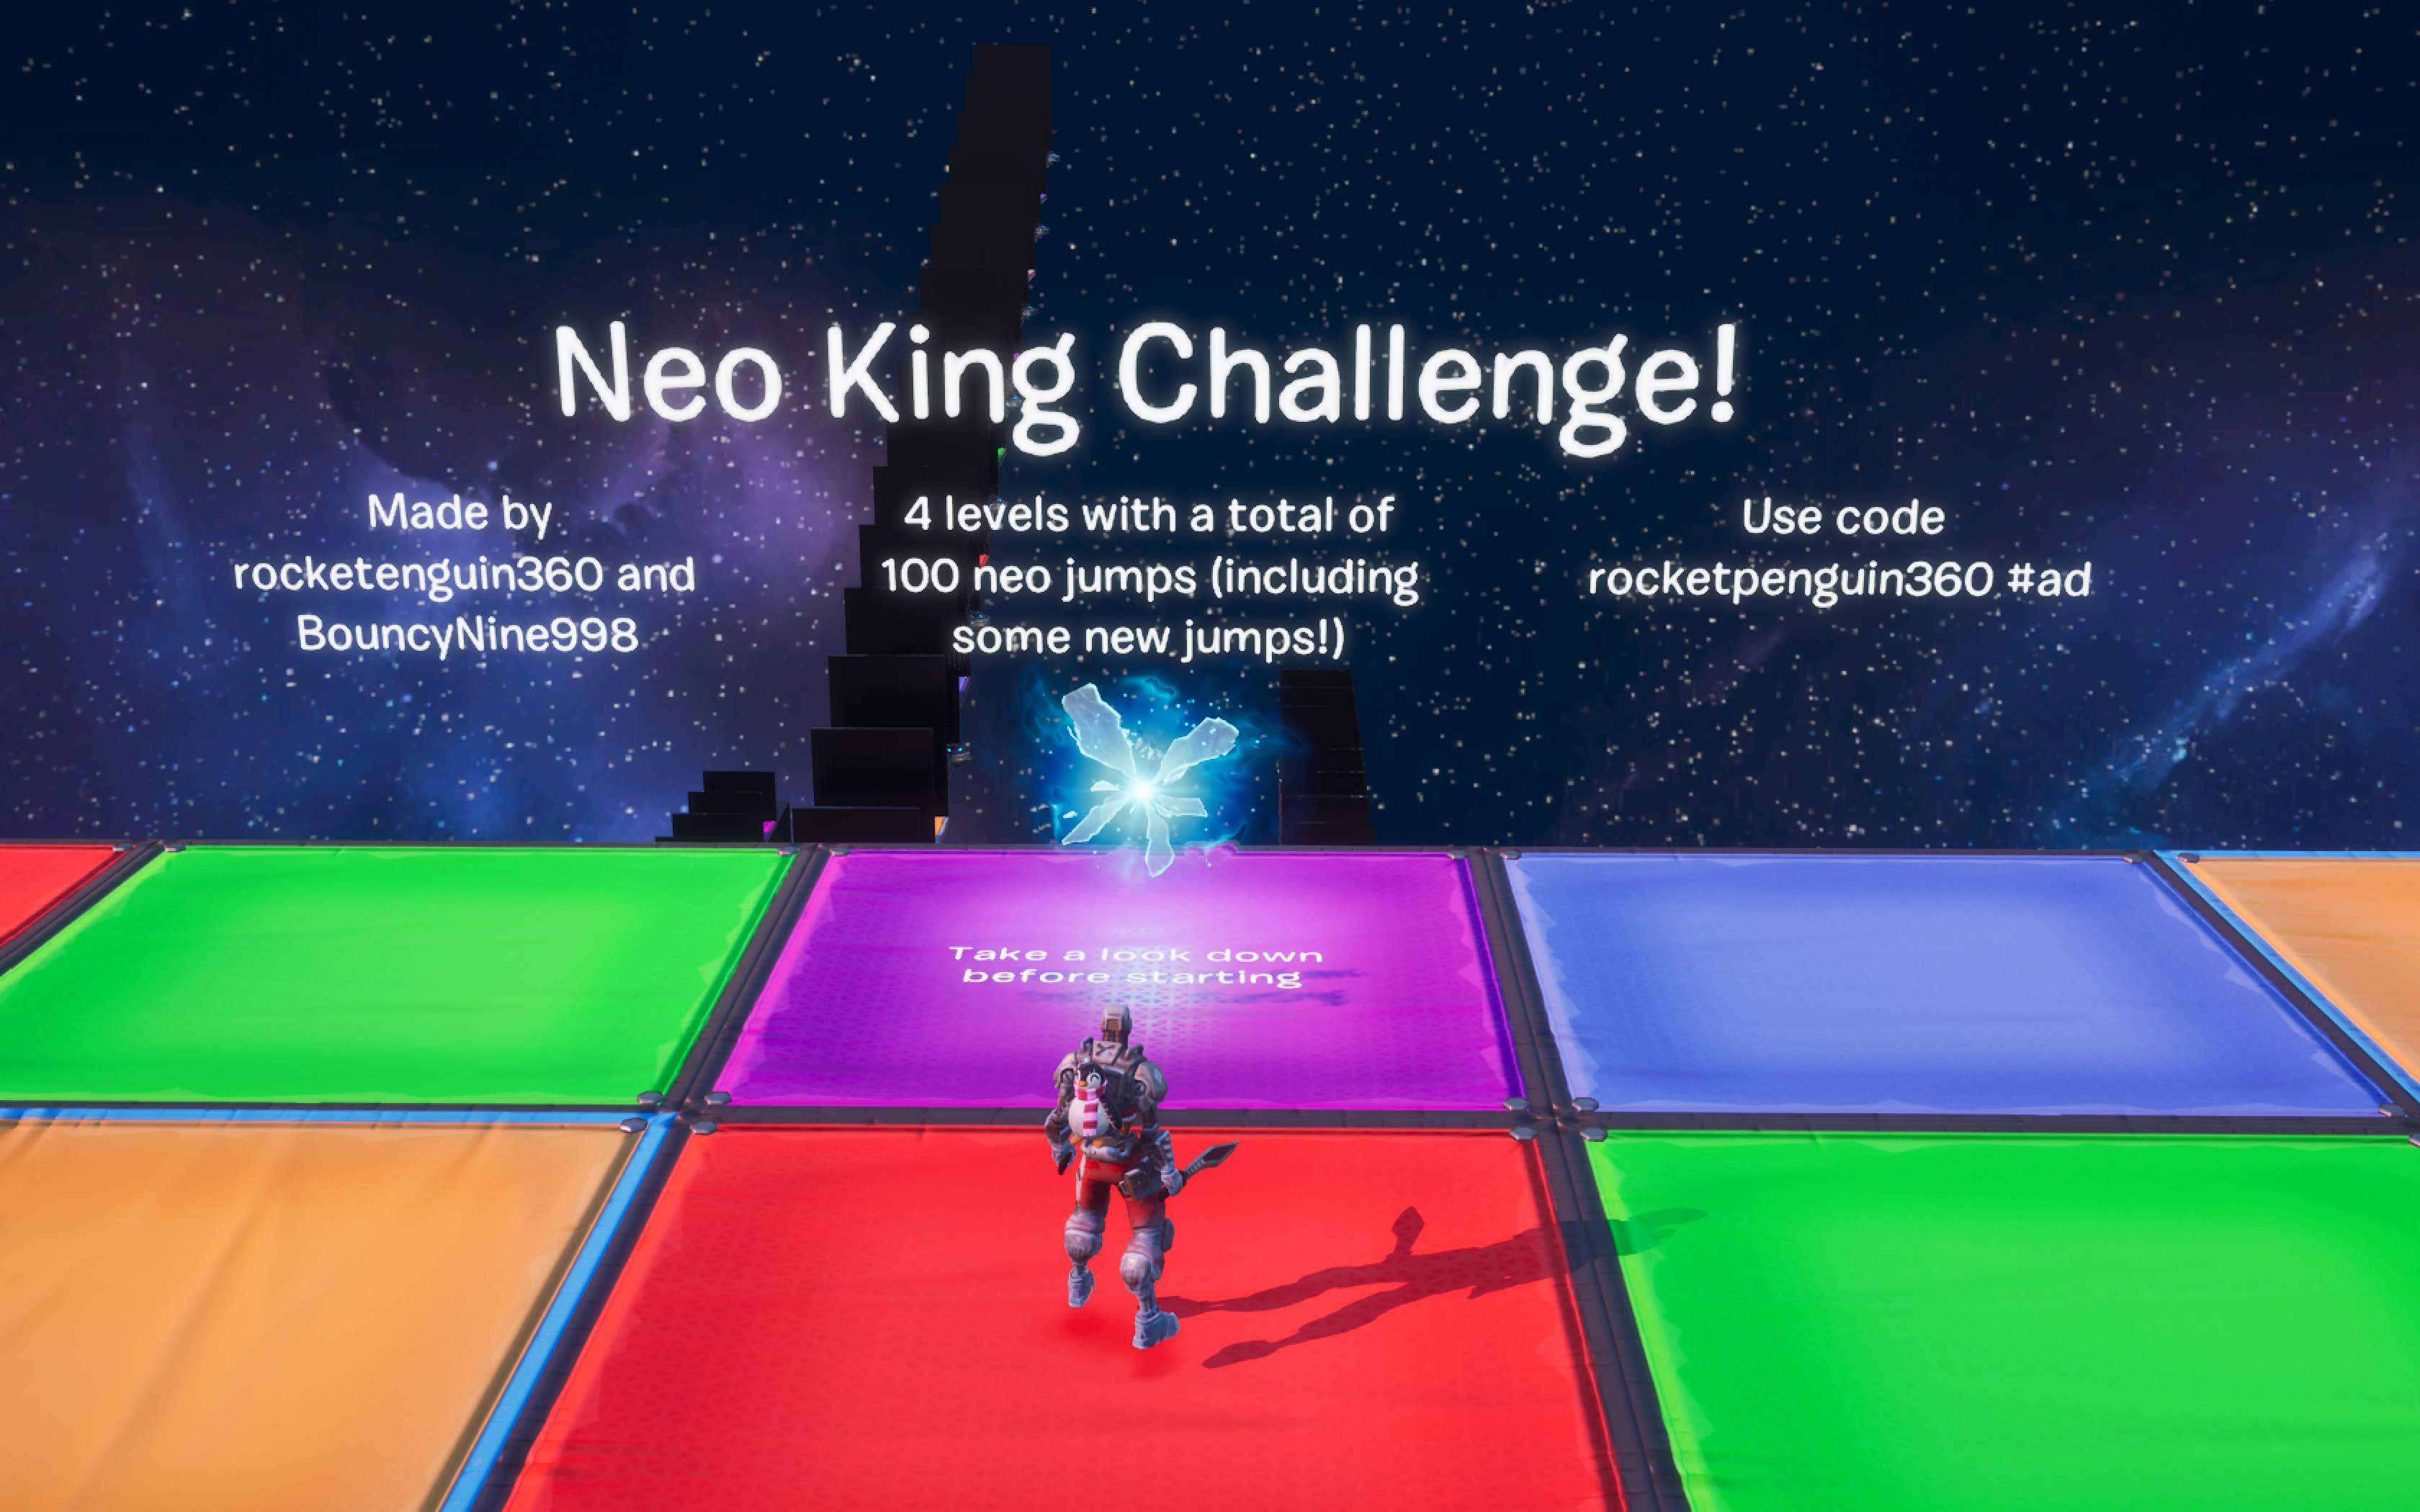 NEO KING CHALLENGE!